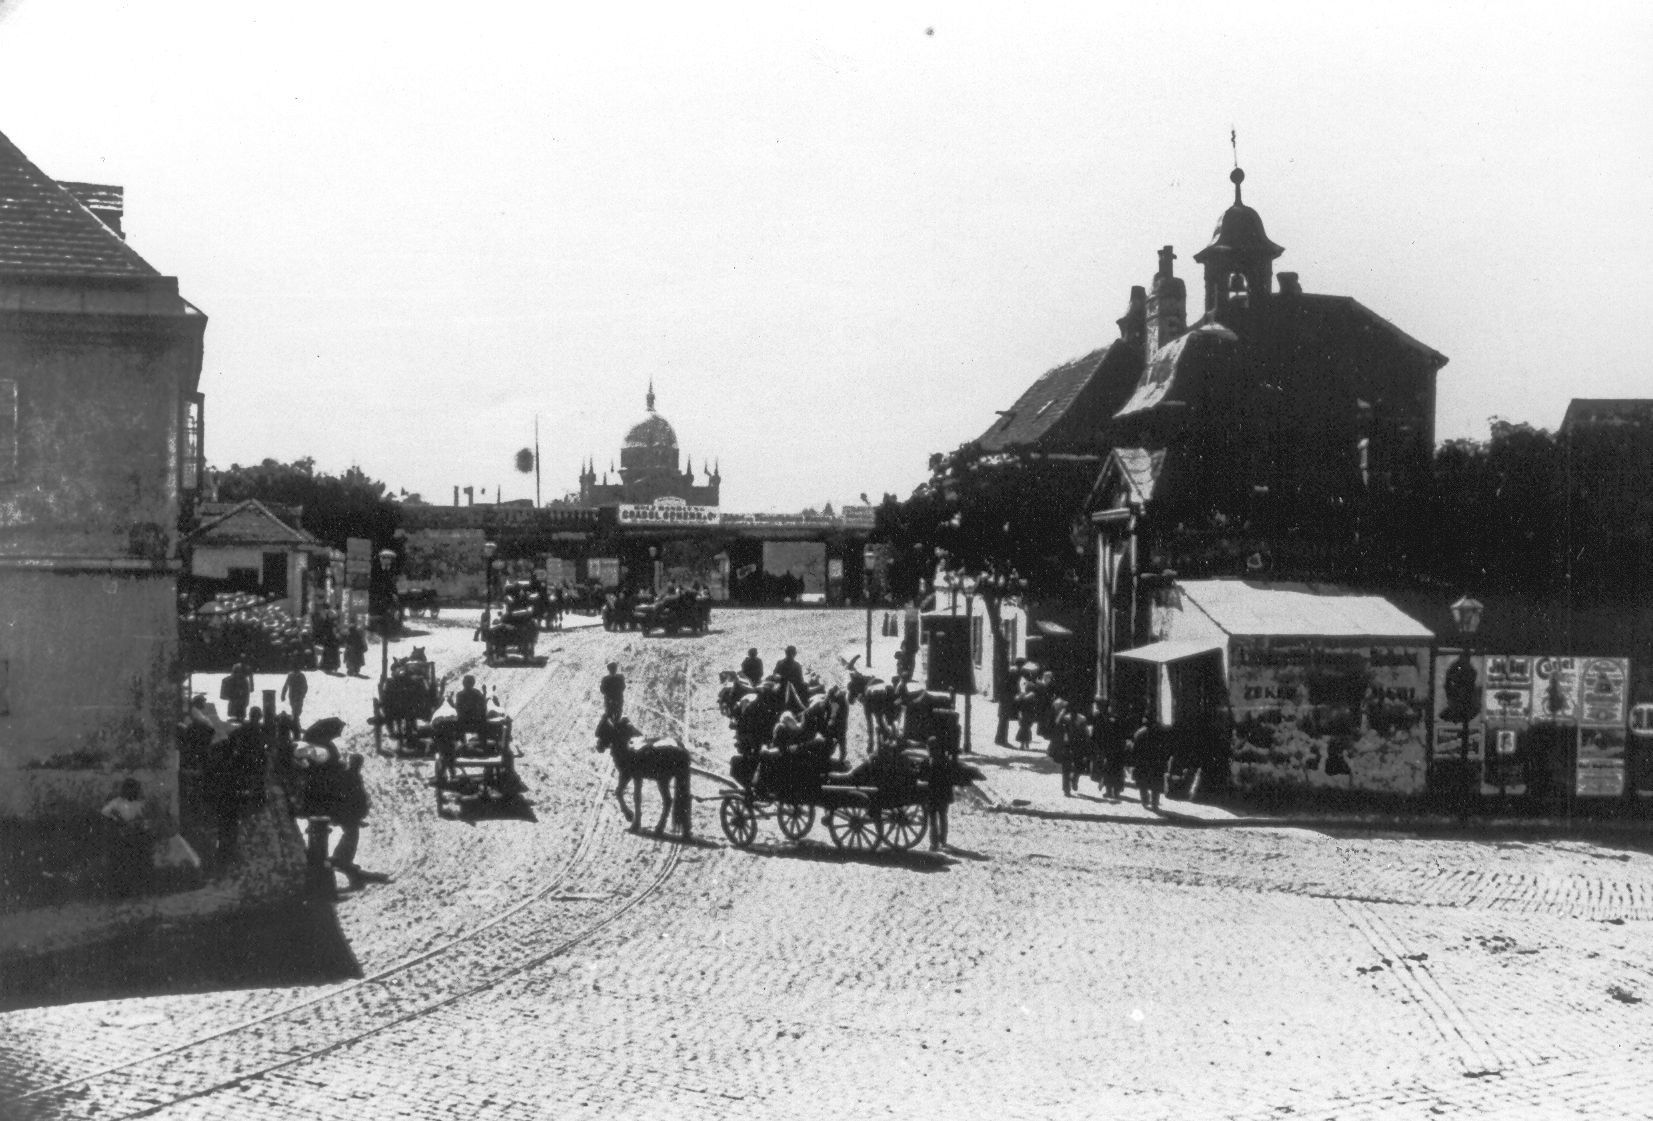 Matzleinsdorfer Platz